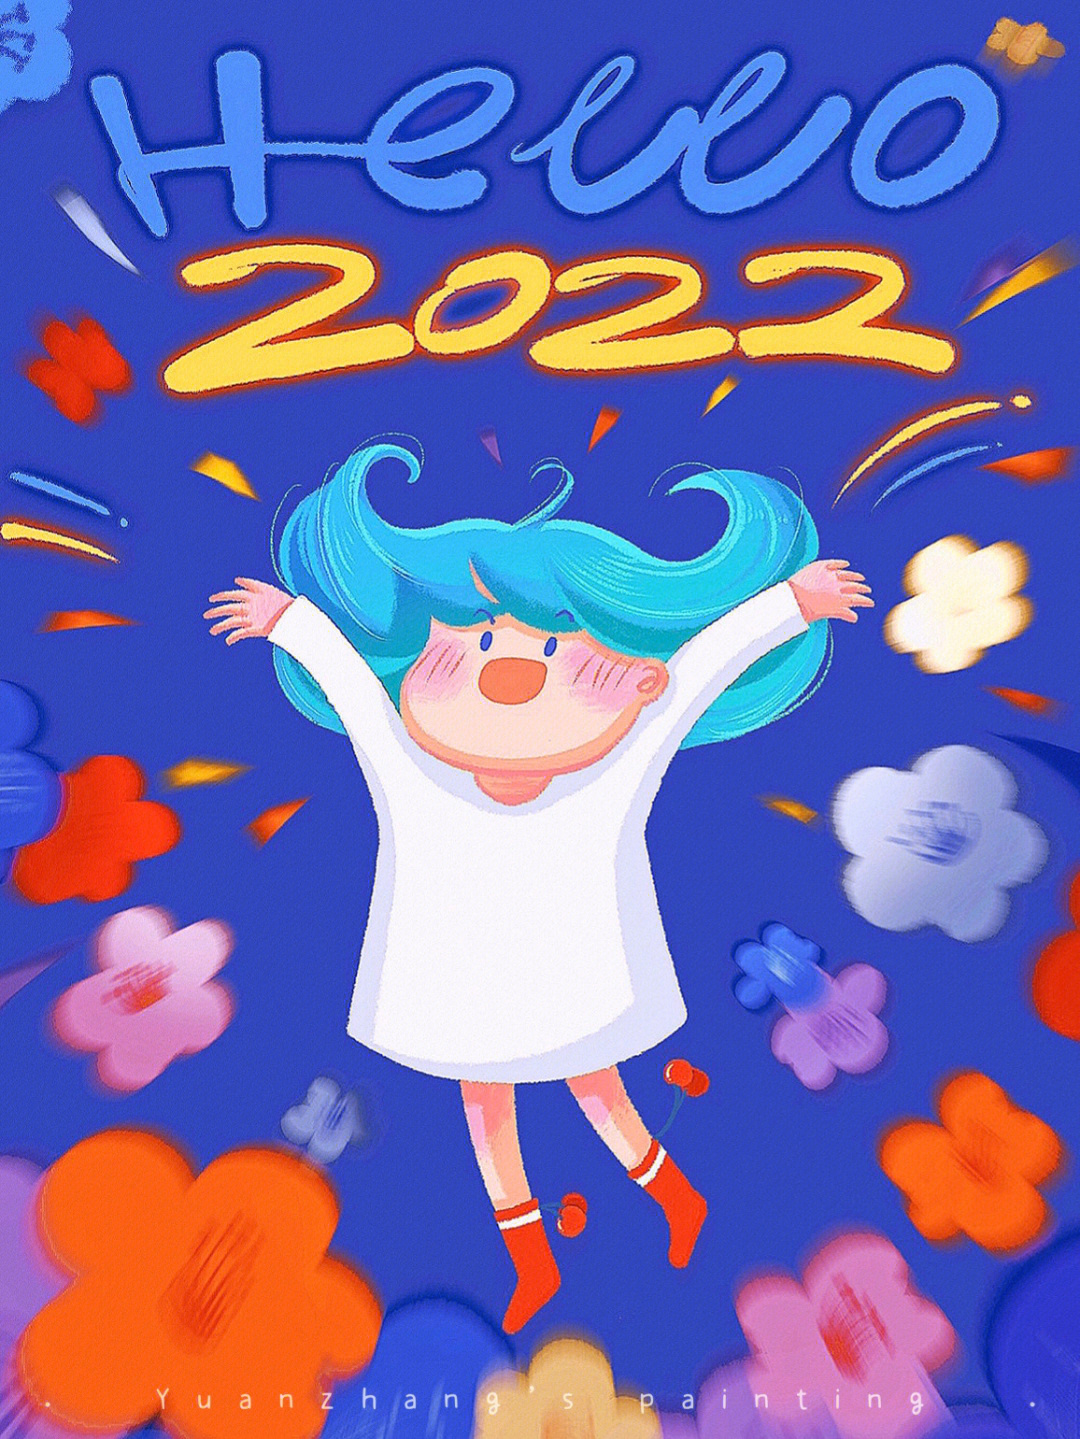 原创插画2022年我新年的愿望是